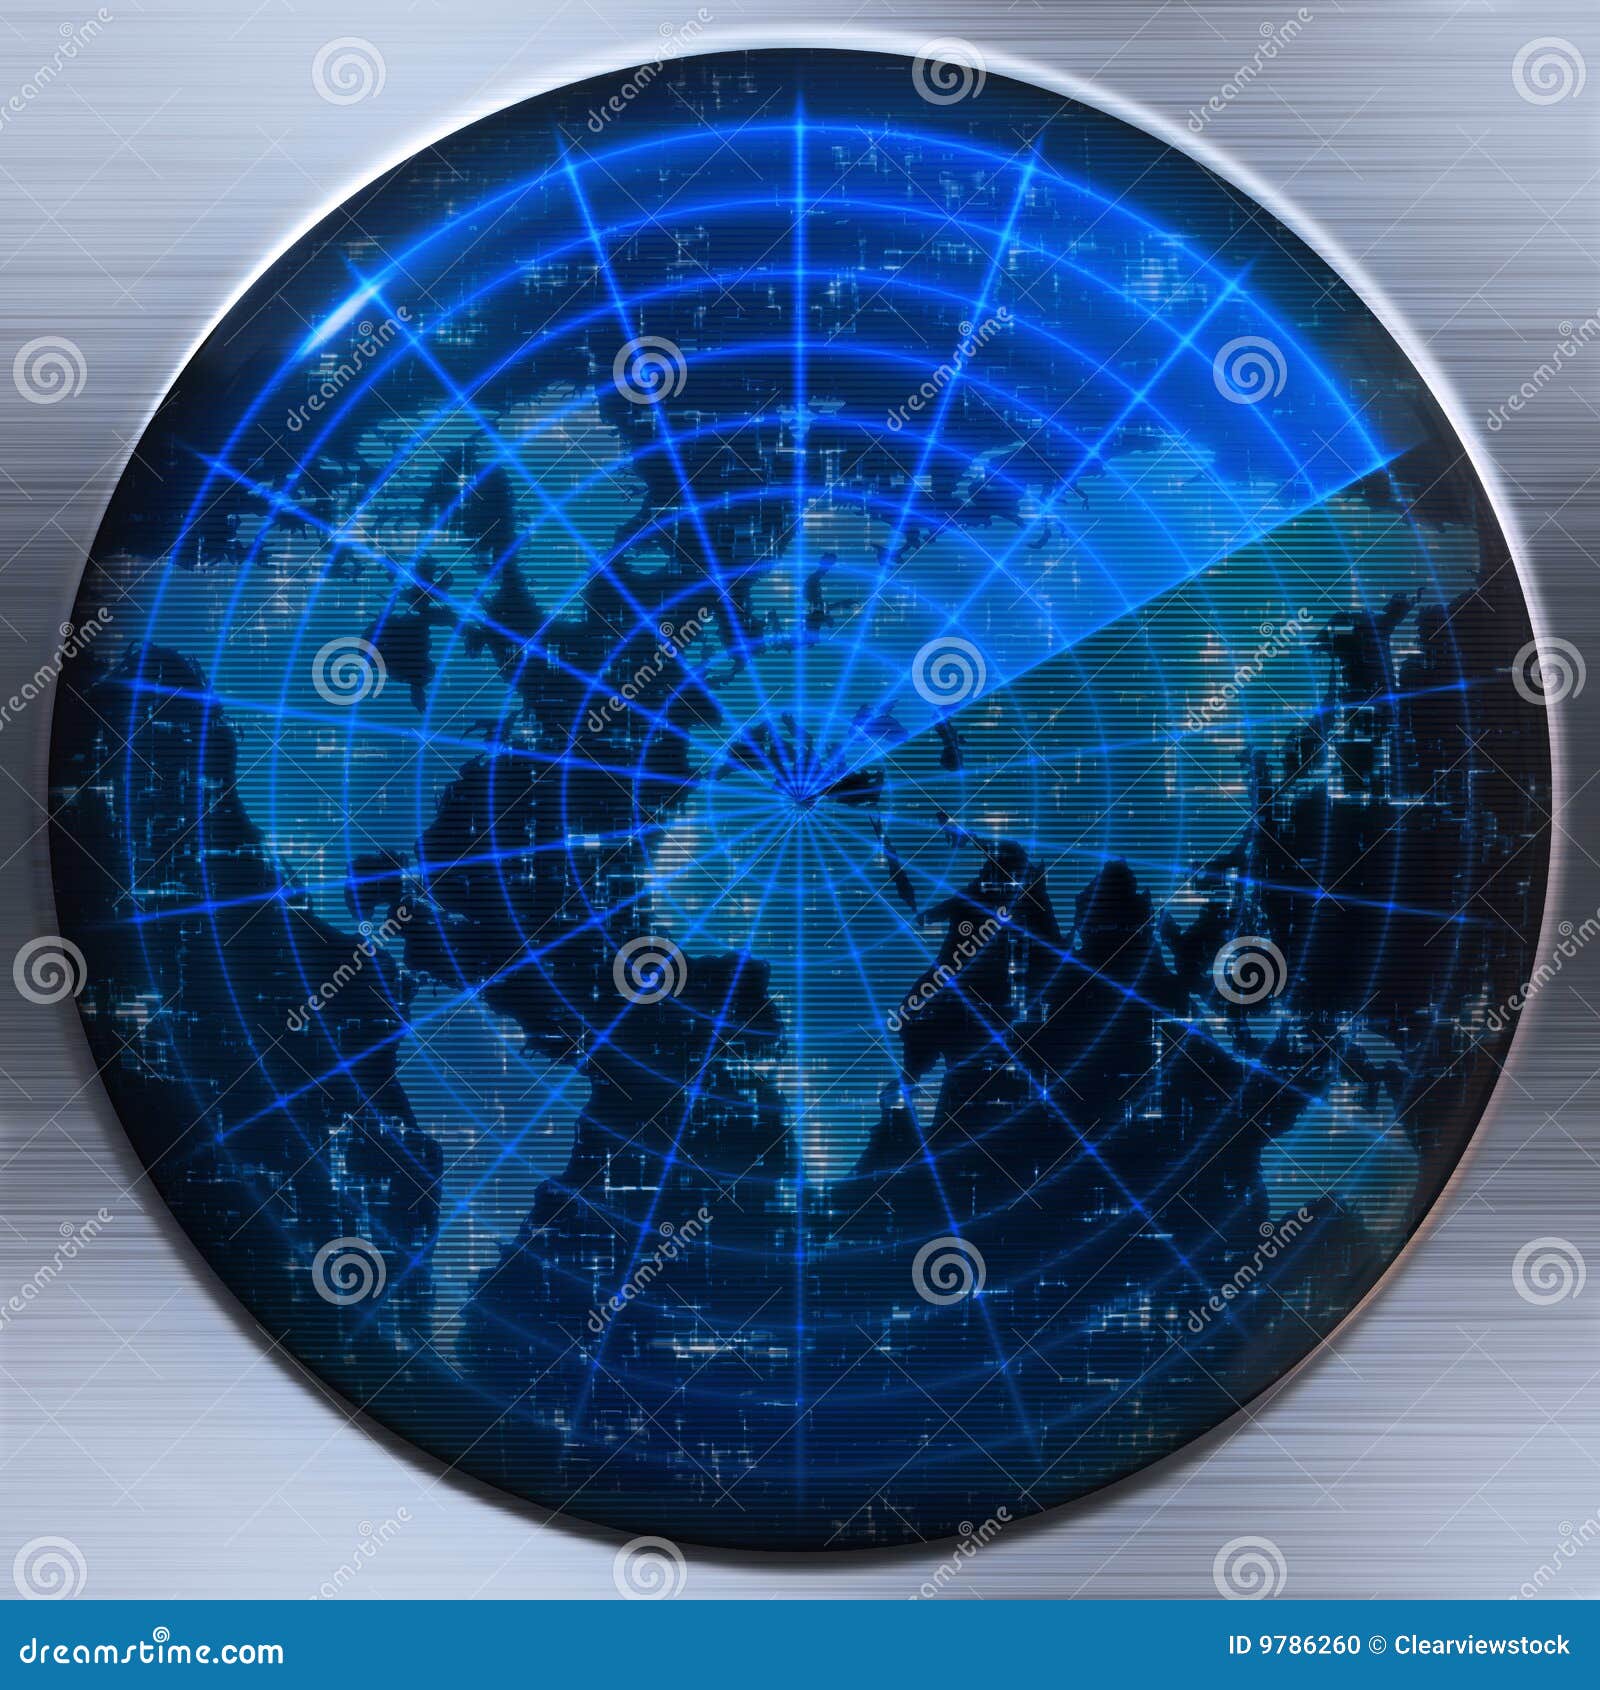 world map radar or sonar